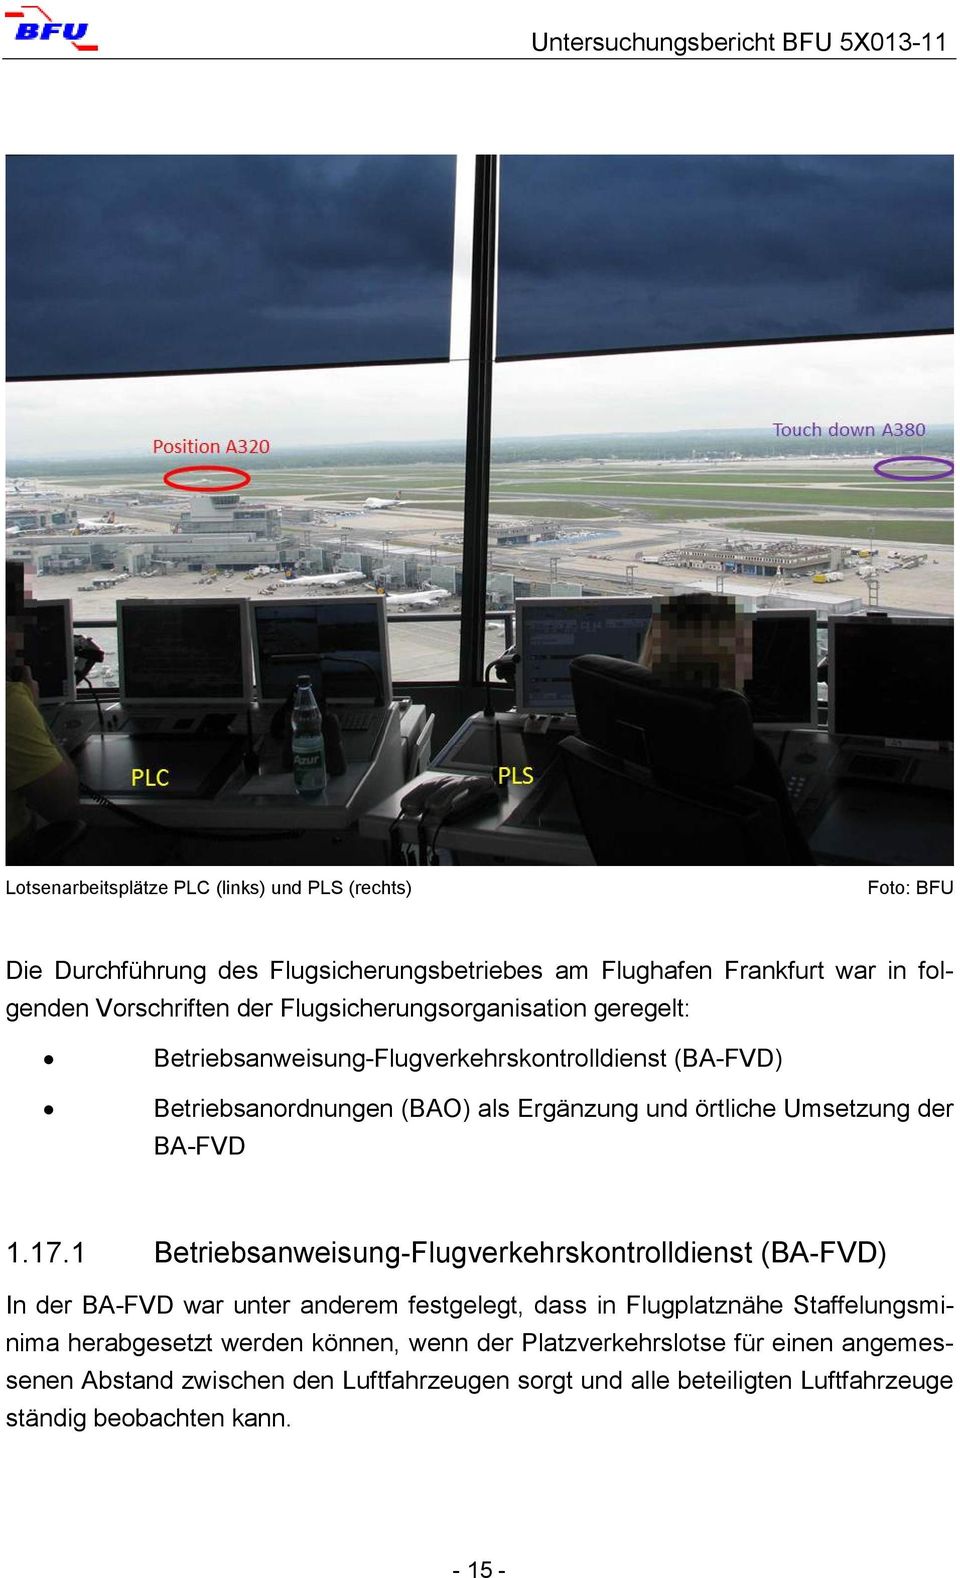 1.17.1 Betriebsanweisung-Flugverkehrskontrolldienst (BA-FVD) In der BA-FVD war unter anderem festgelegt, dass in Flugplatznähe Staffelungsminima herabgesetzt werden